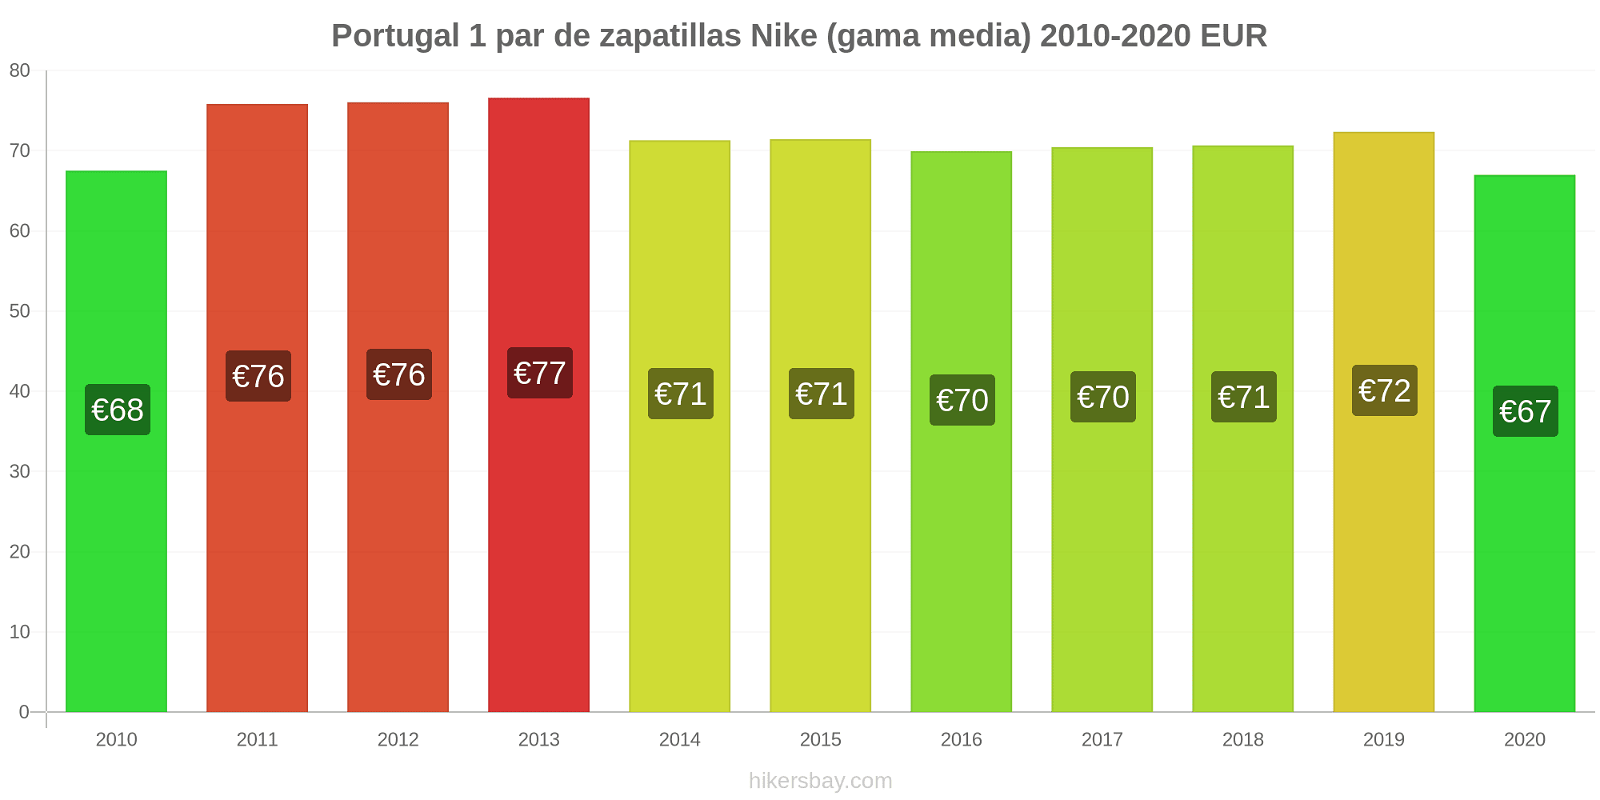 Portugal cambios de precios 1 par de zapatillas Nike (gama media) hikersbay.com